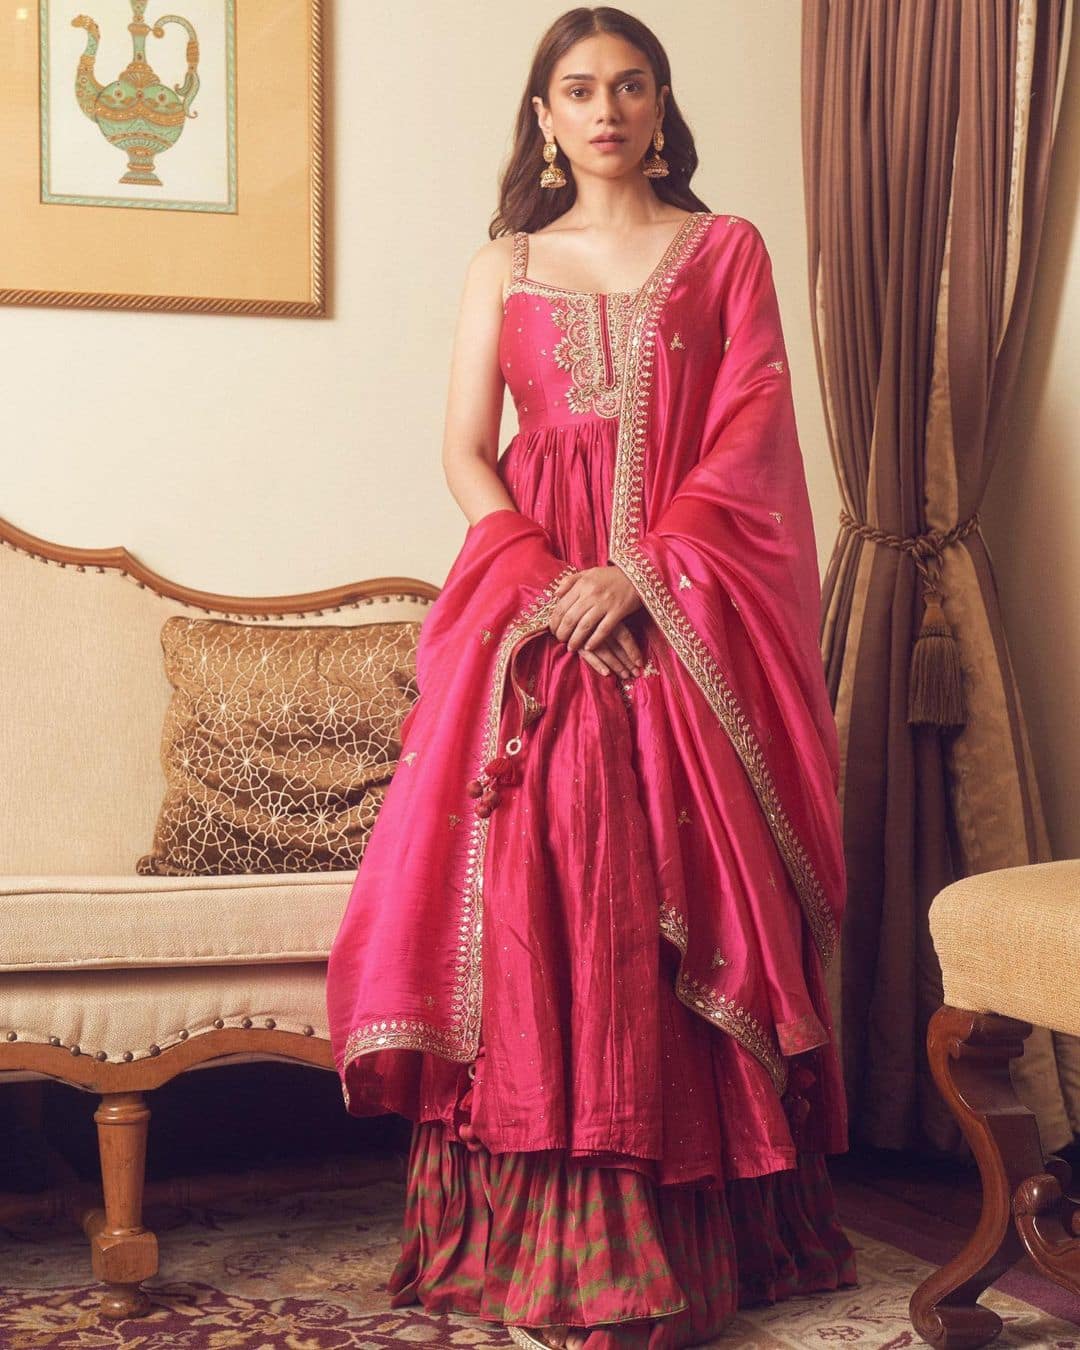 Aditi Rao Hydari looks regal in a pink sharara set